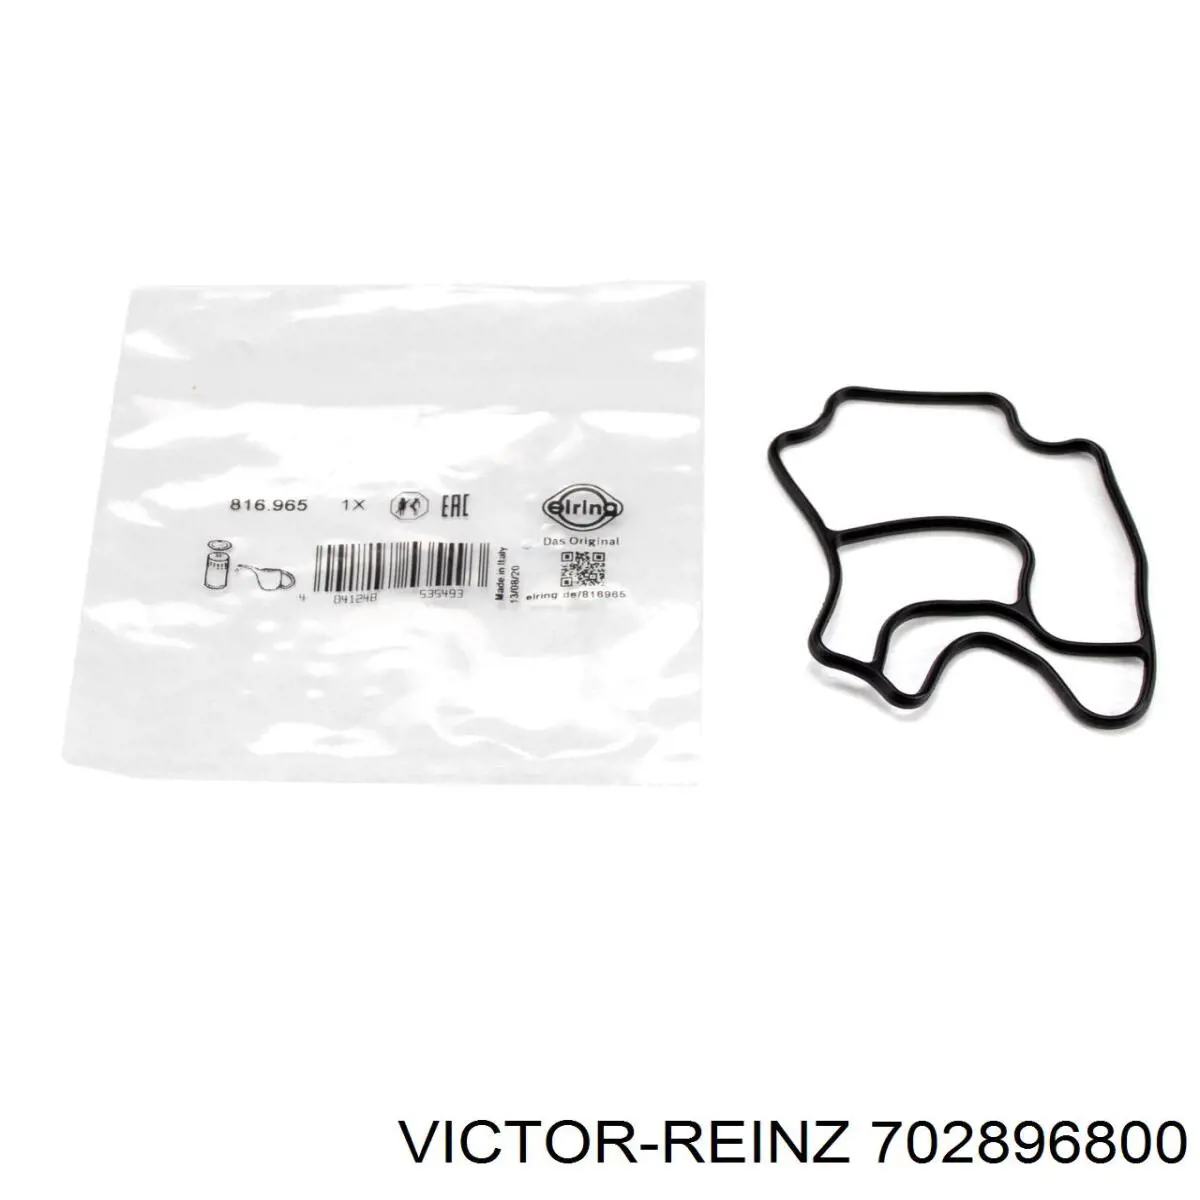 702896800 Victor Reinz junta, adaptador de filtro de aceite